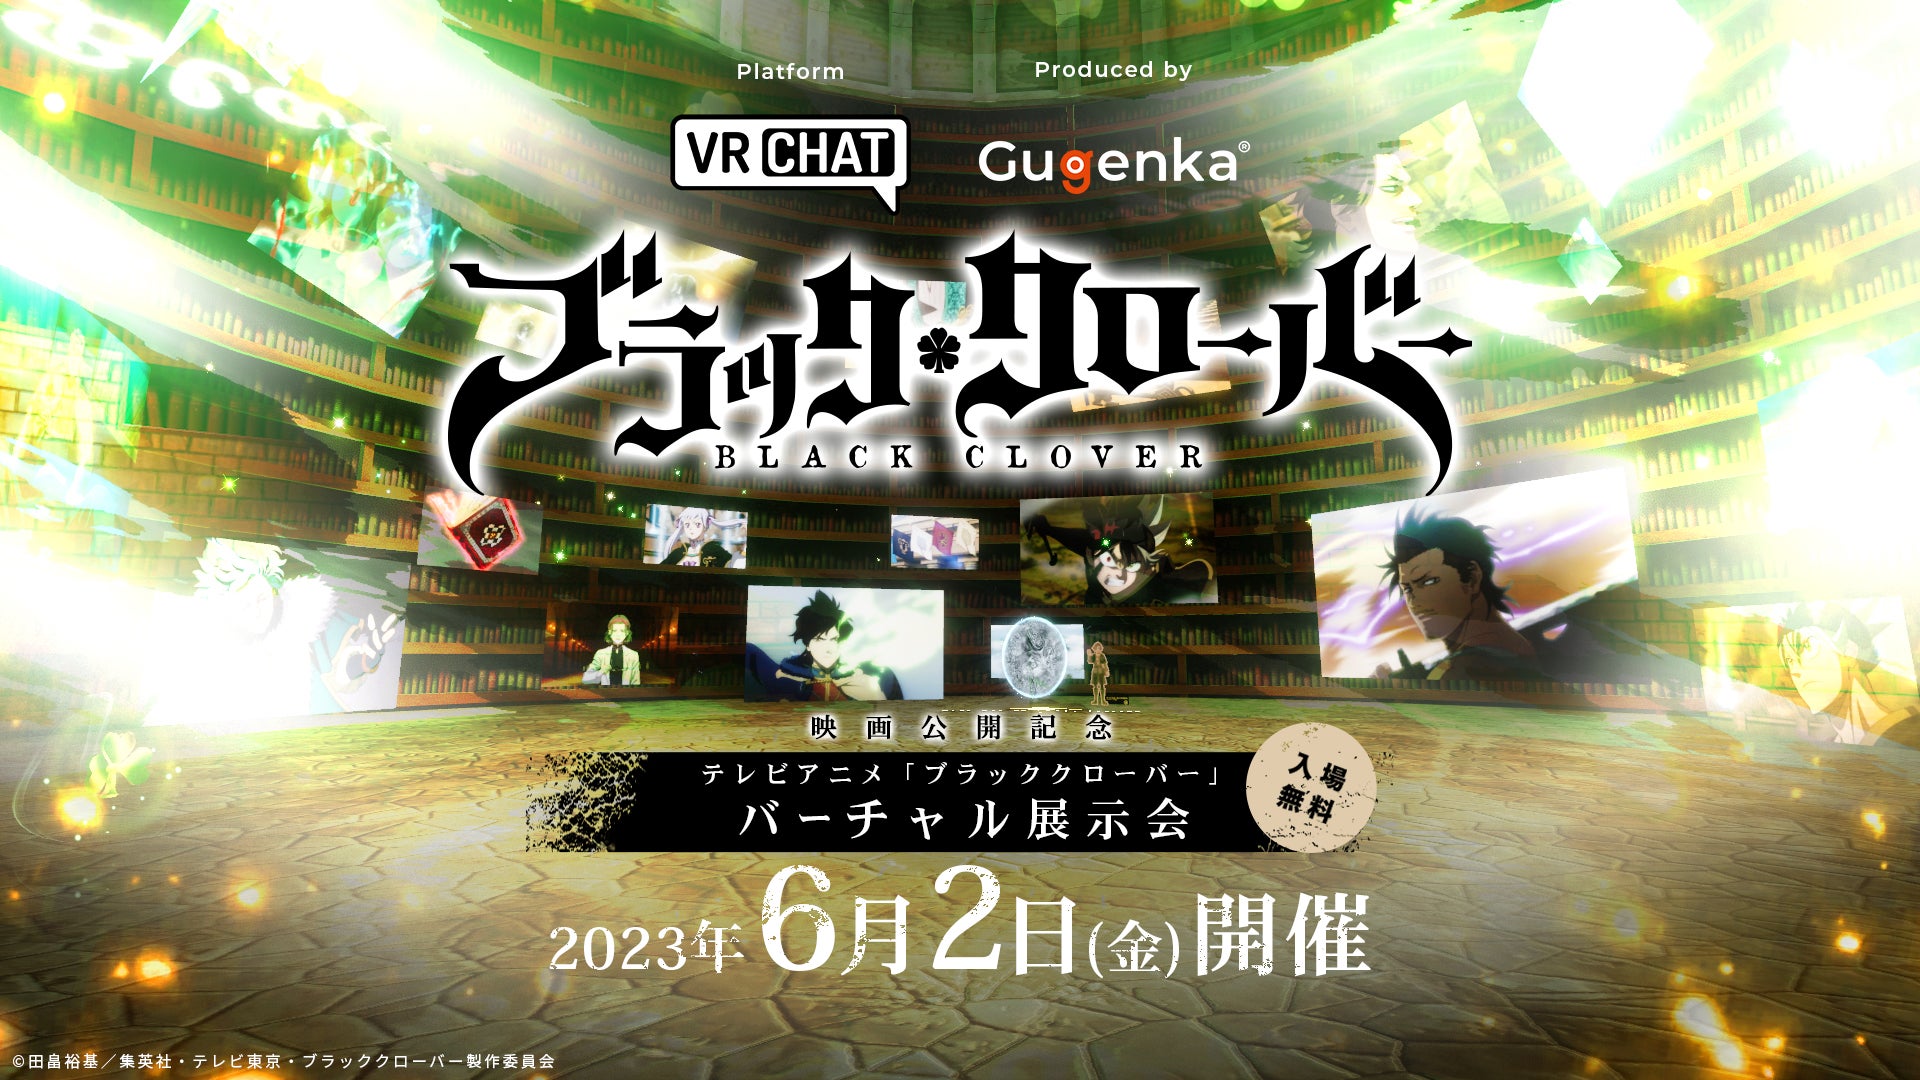 テレビアニメ「ブラッククローバー」バーチャル展示会を開催 VRChatで魔法を使った対戦プレイ